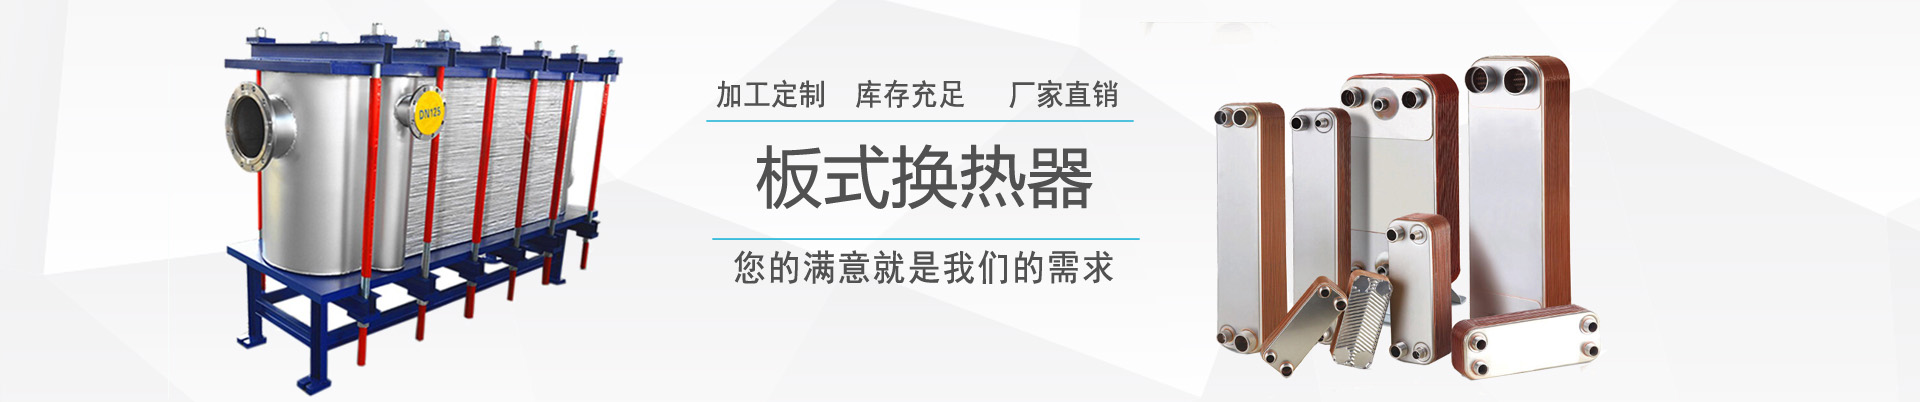 新聞中心 - ,換熱器,板式換熱器,換熱器機組,上海將星化工設備有限公司